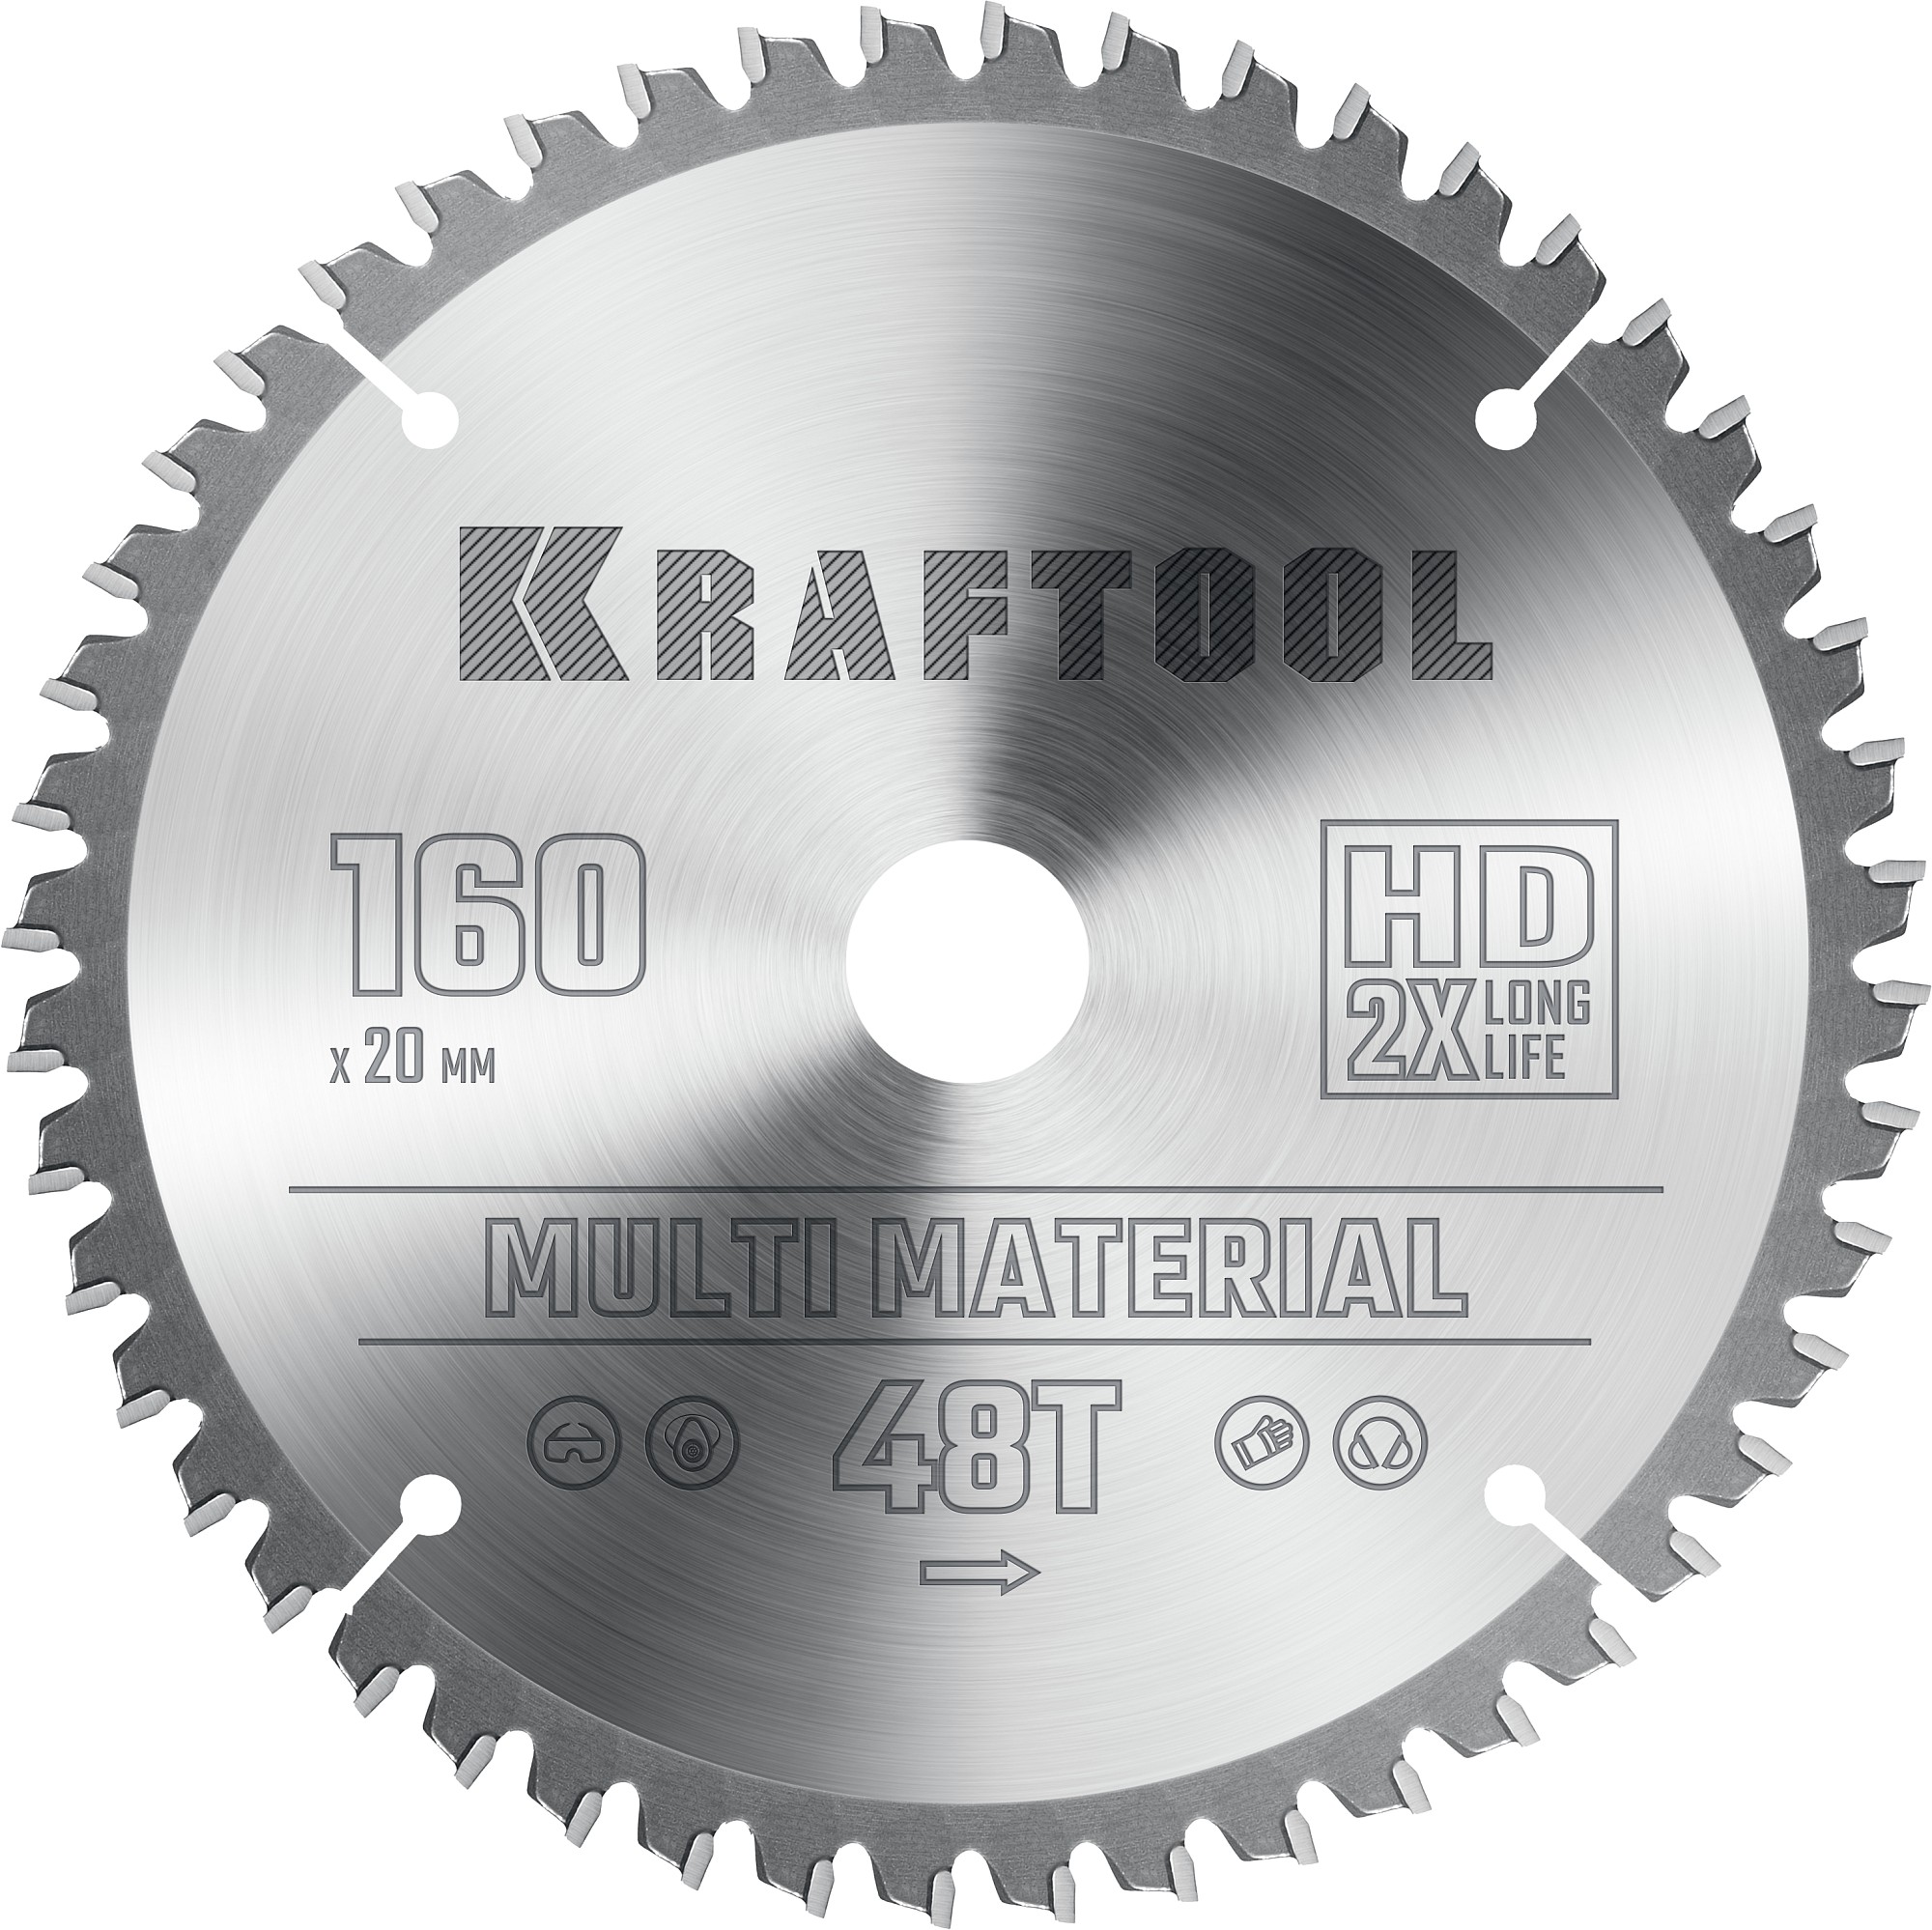 Диск пильный по алюминию Kraftool Multi Material 160х20 мм, 48Т 36953-160-20 диск пильный по алюминию kraftool multi material 165x20 мм 48т 36953 165 20